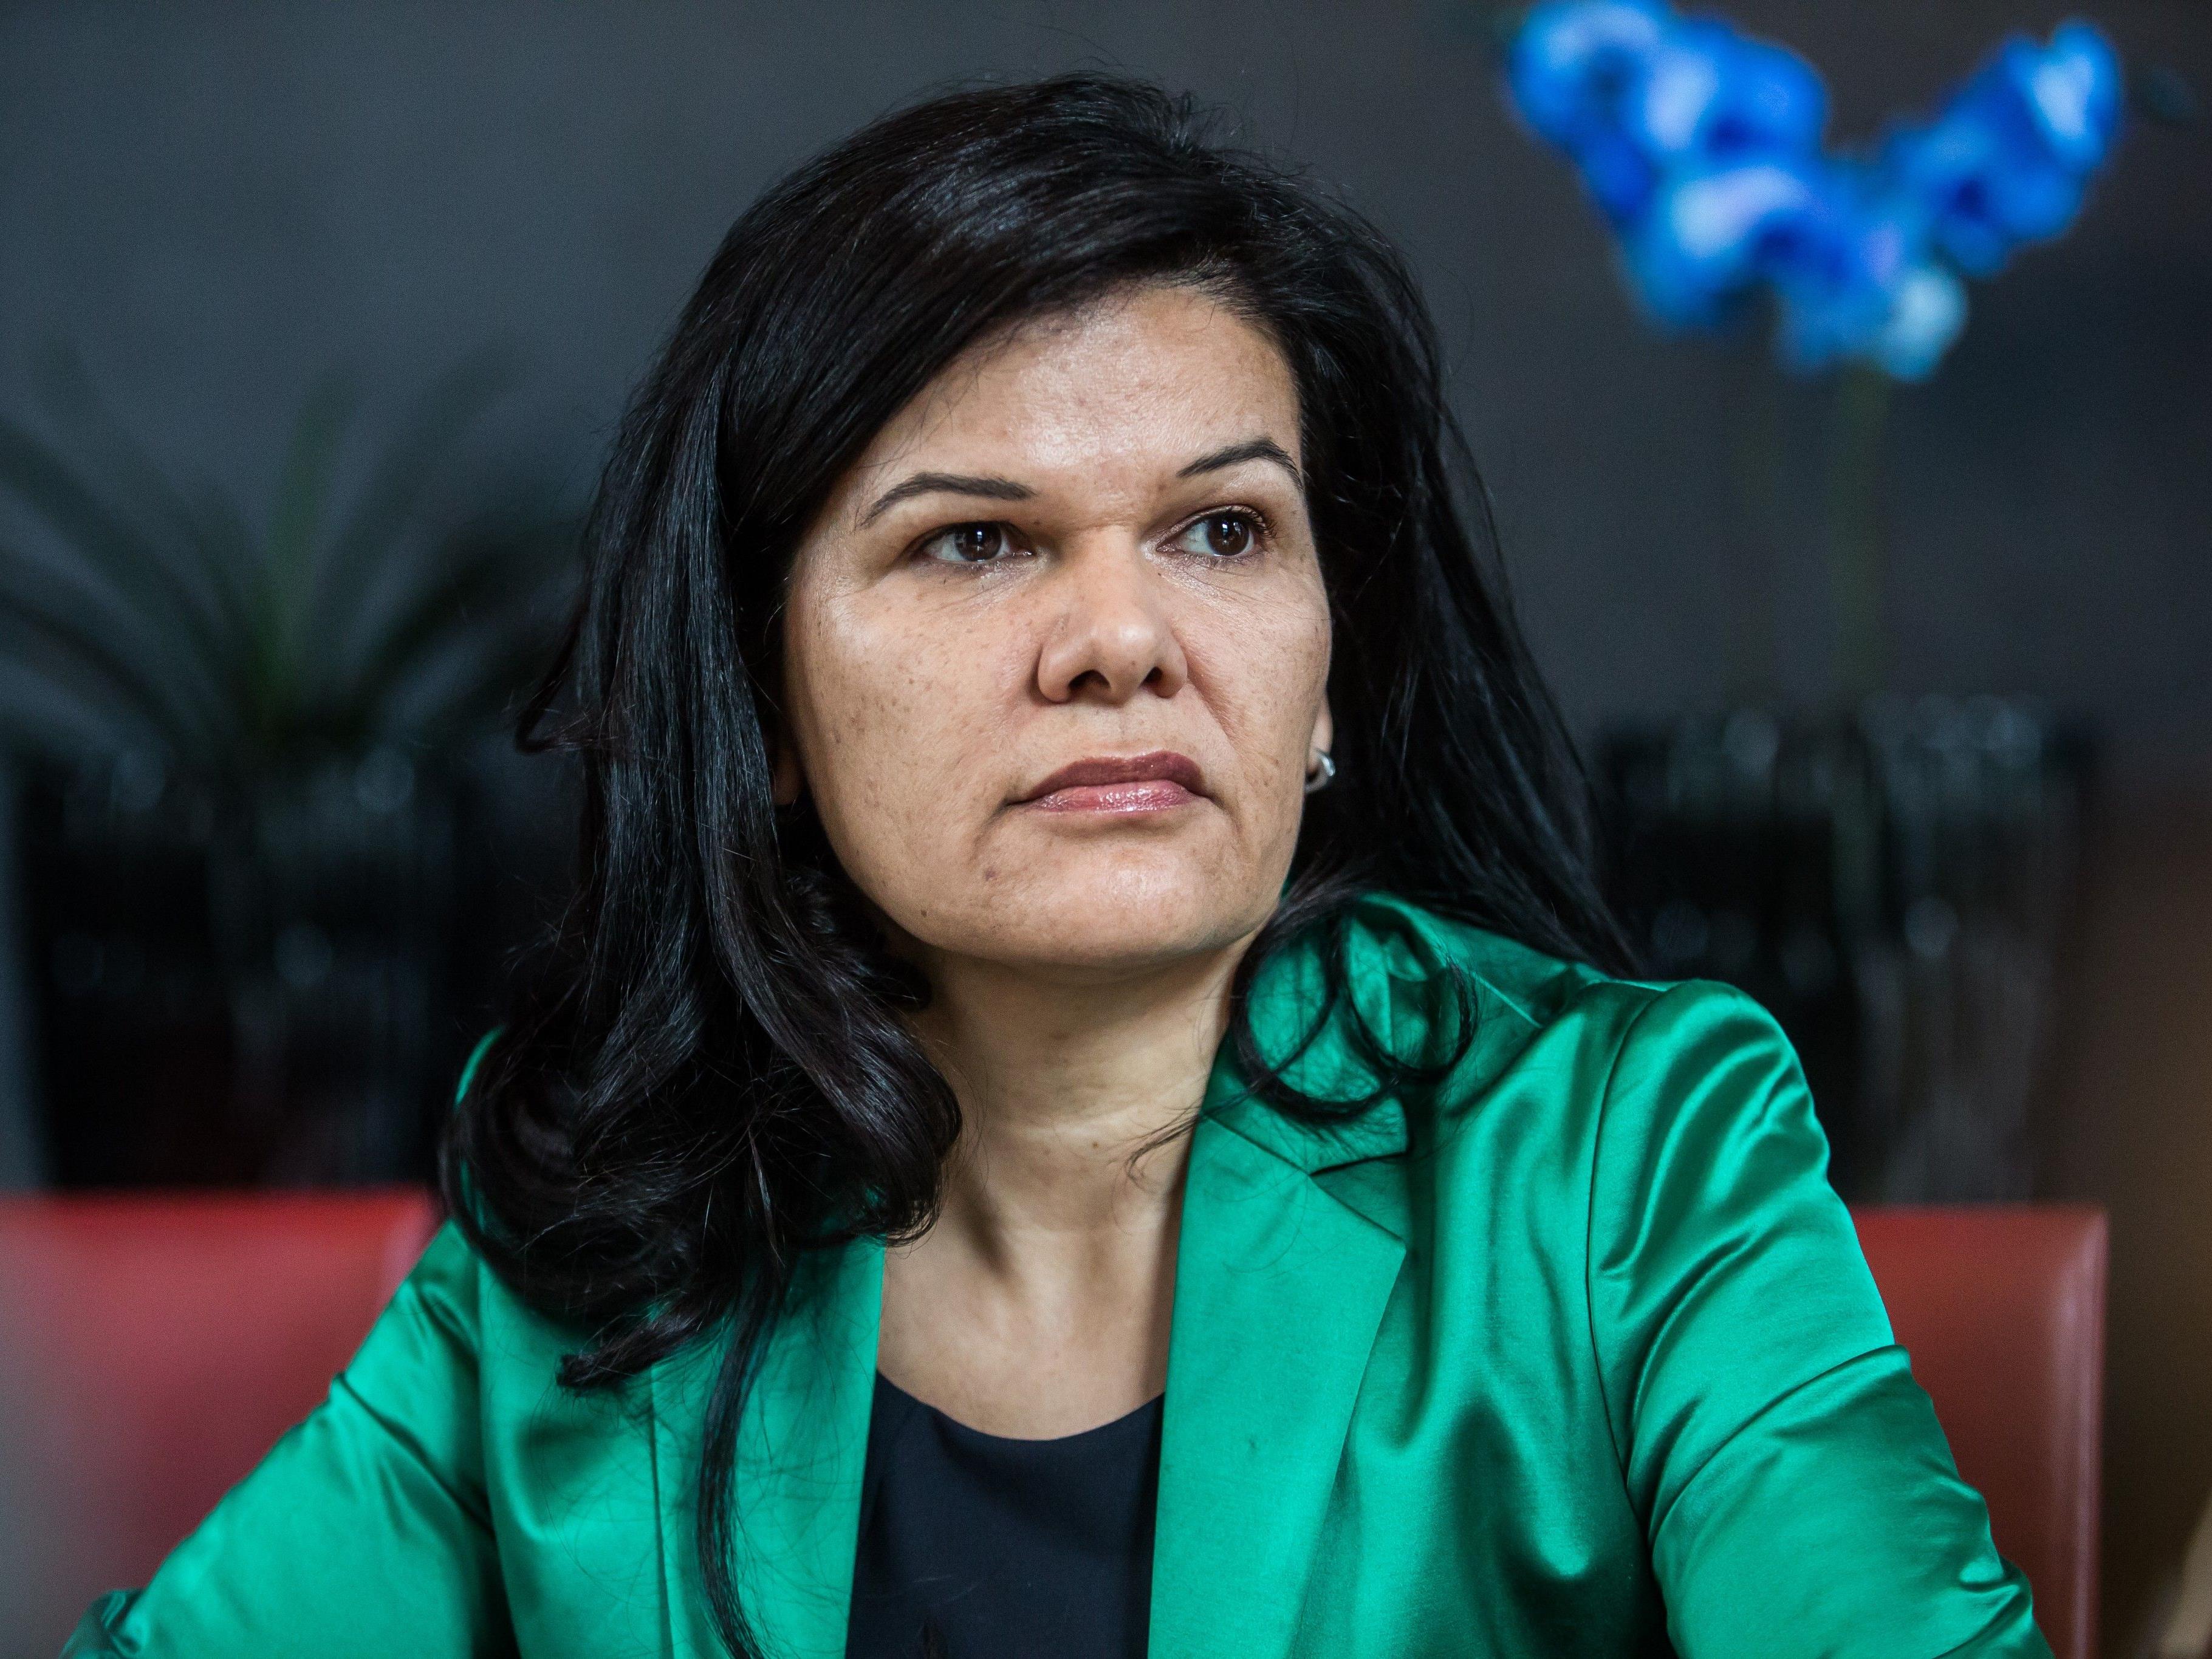 Sandra Schoch von den Grünen fordert mehr Gehalt für Friseure.